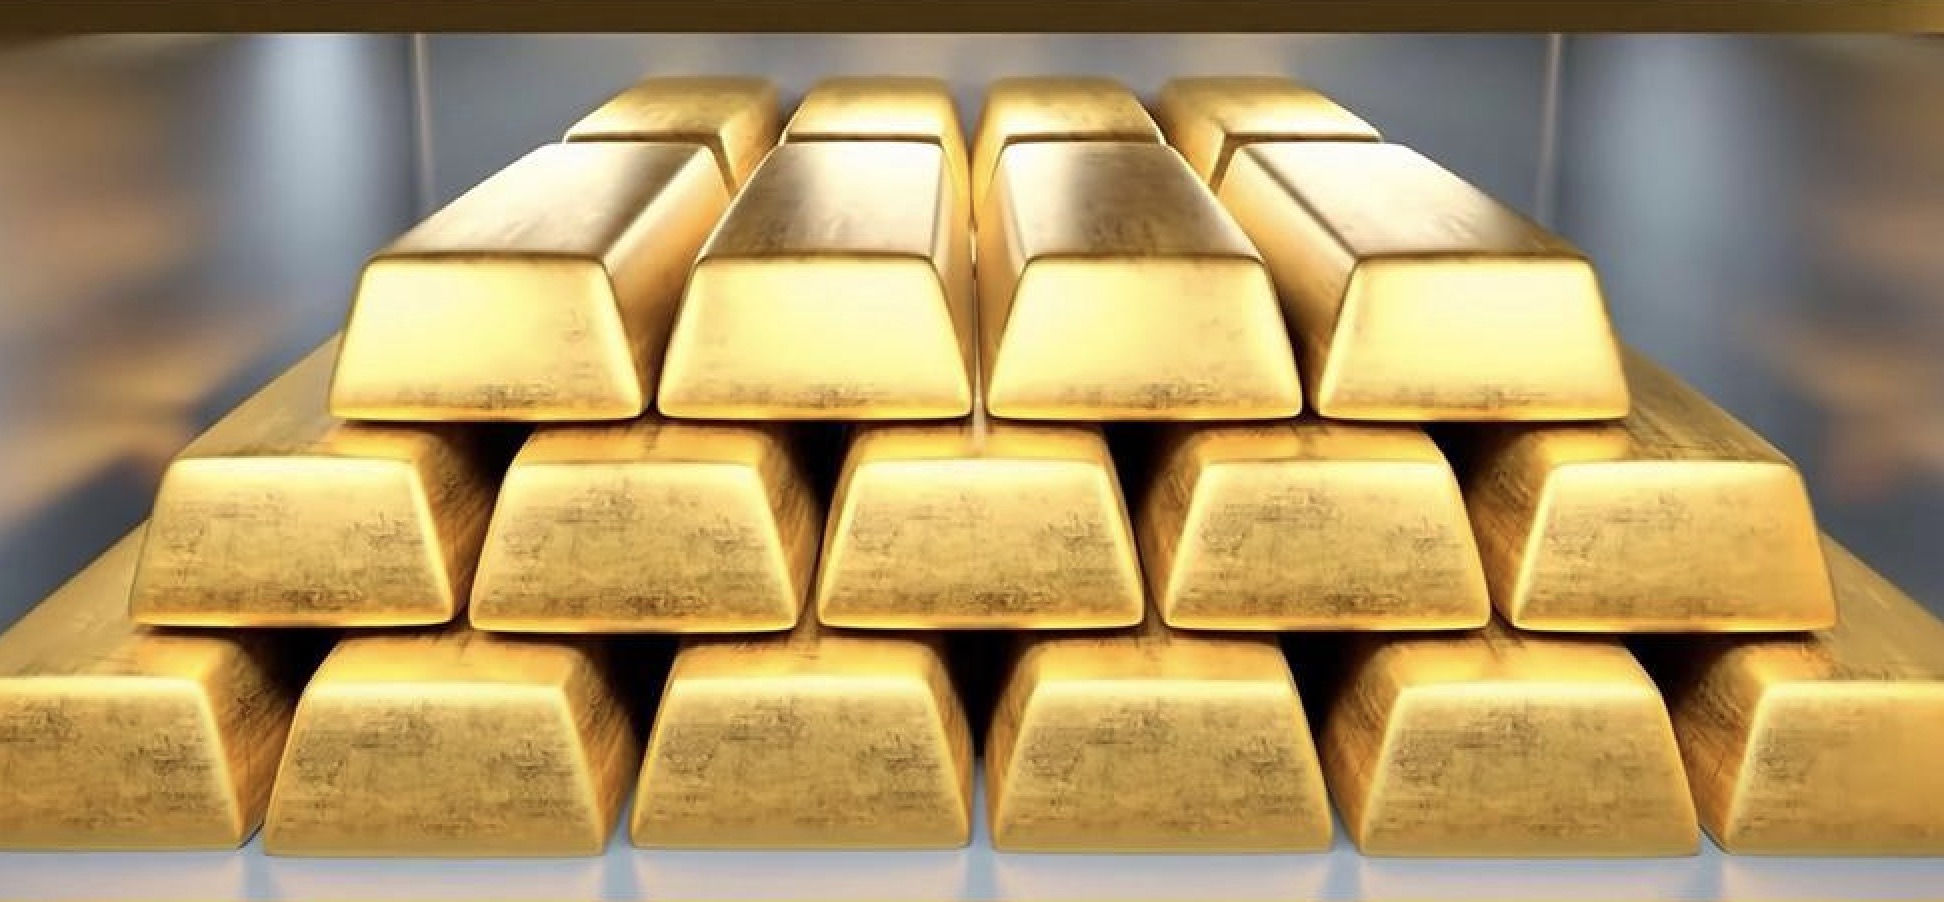 การแจ้งเตือนการซื้อขายทองคำ: ราคาทองคำอยู่ภายใต้แรงกดดันเล็กน้อย เทรดเดอร์มีความกังวลเกี่ยวกับอัตราเงินเฟ้อของสหรัฐฯ ที่พุ่งสูงขึ้น